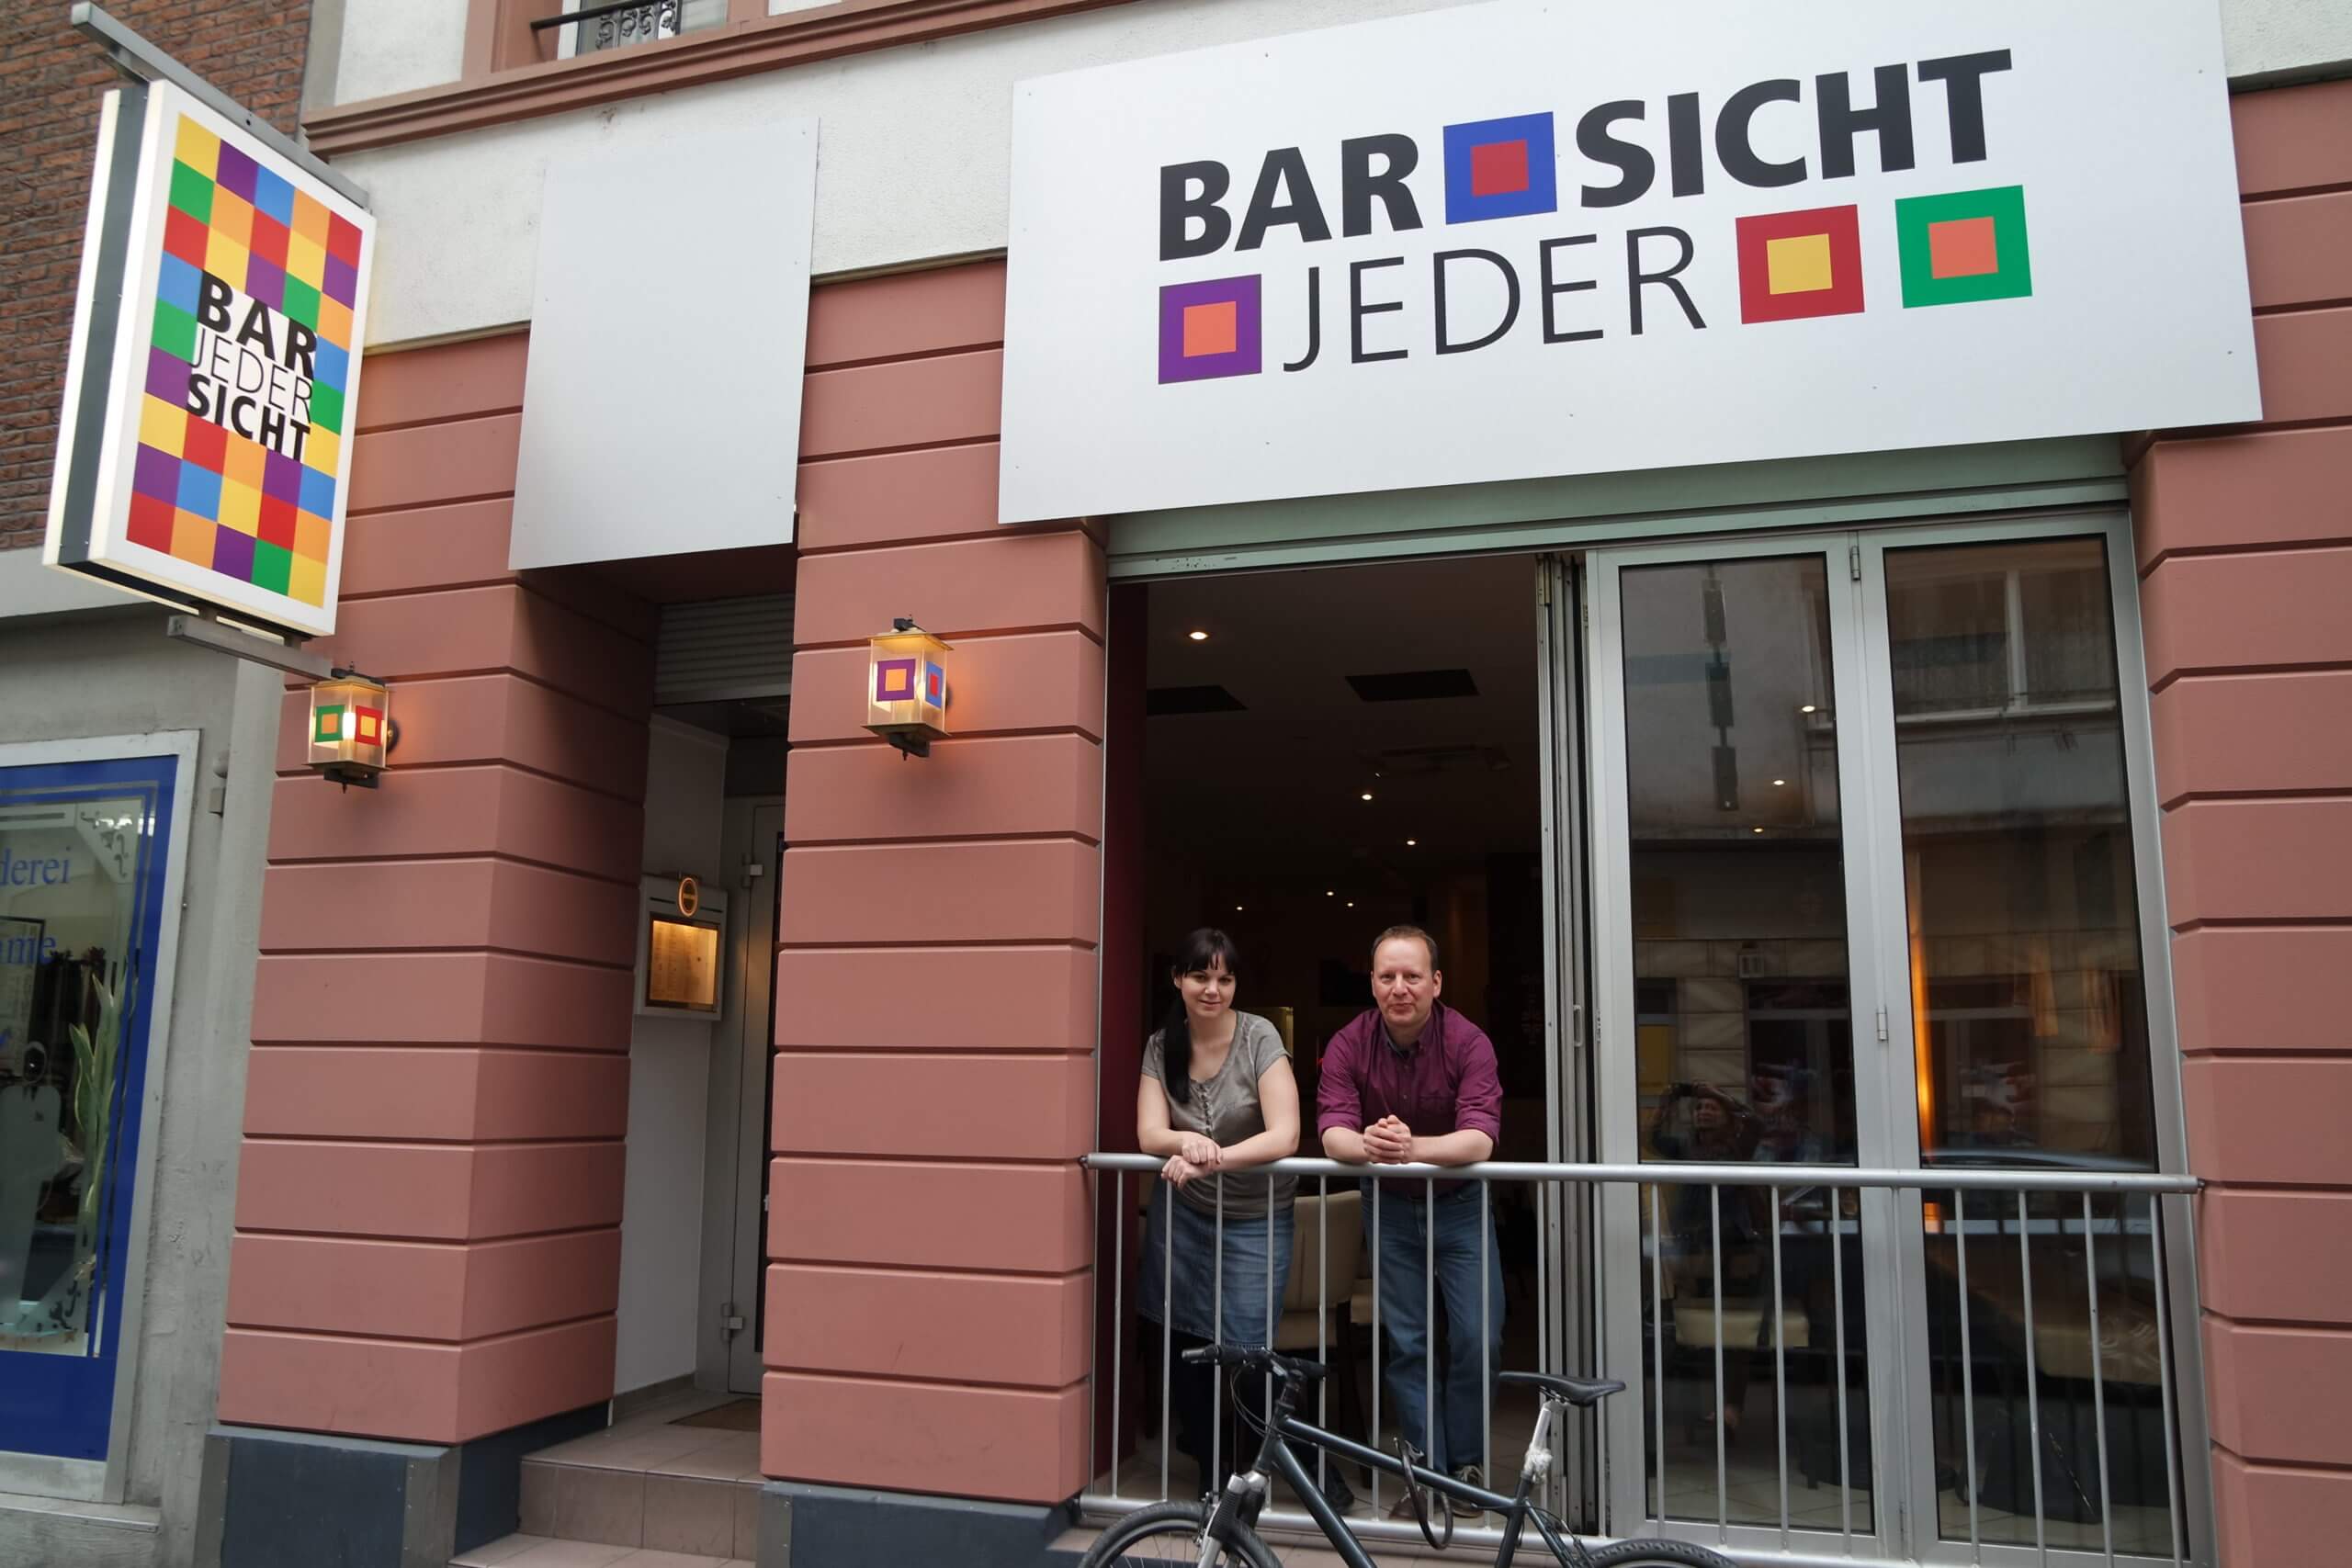 Marina und Andreas sind beide im Vorstand des LBSK e.V. , der die "Bar jeder Sicht" betreibt.